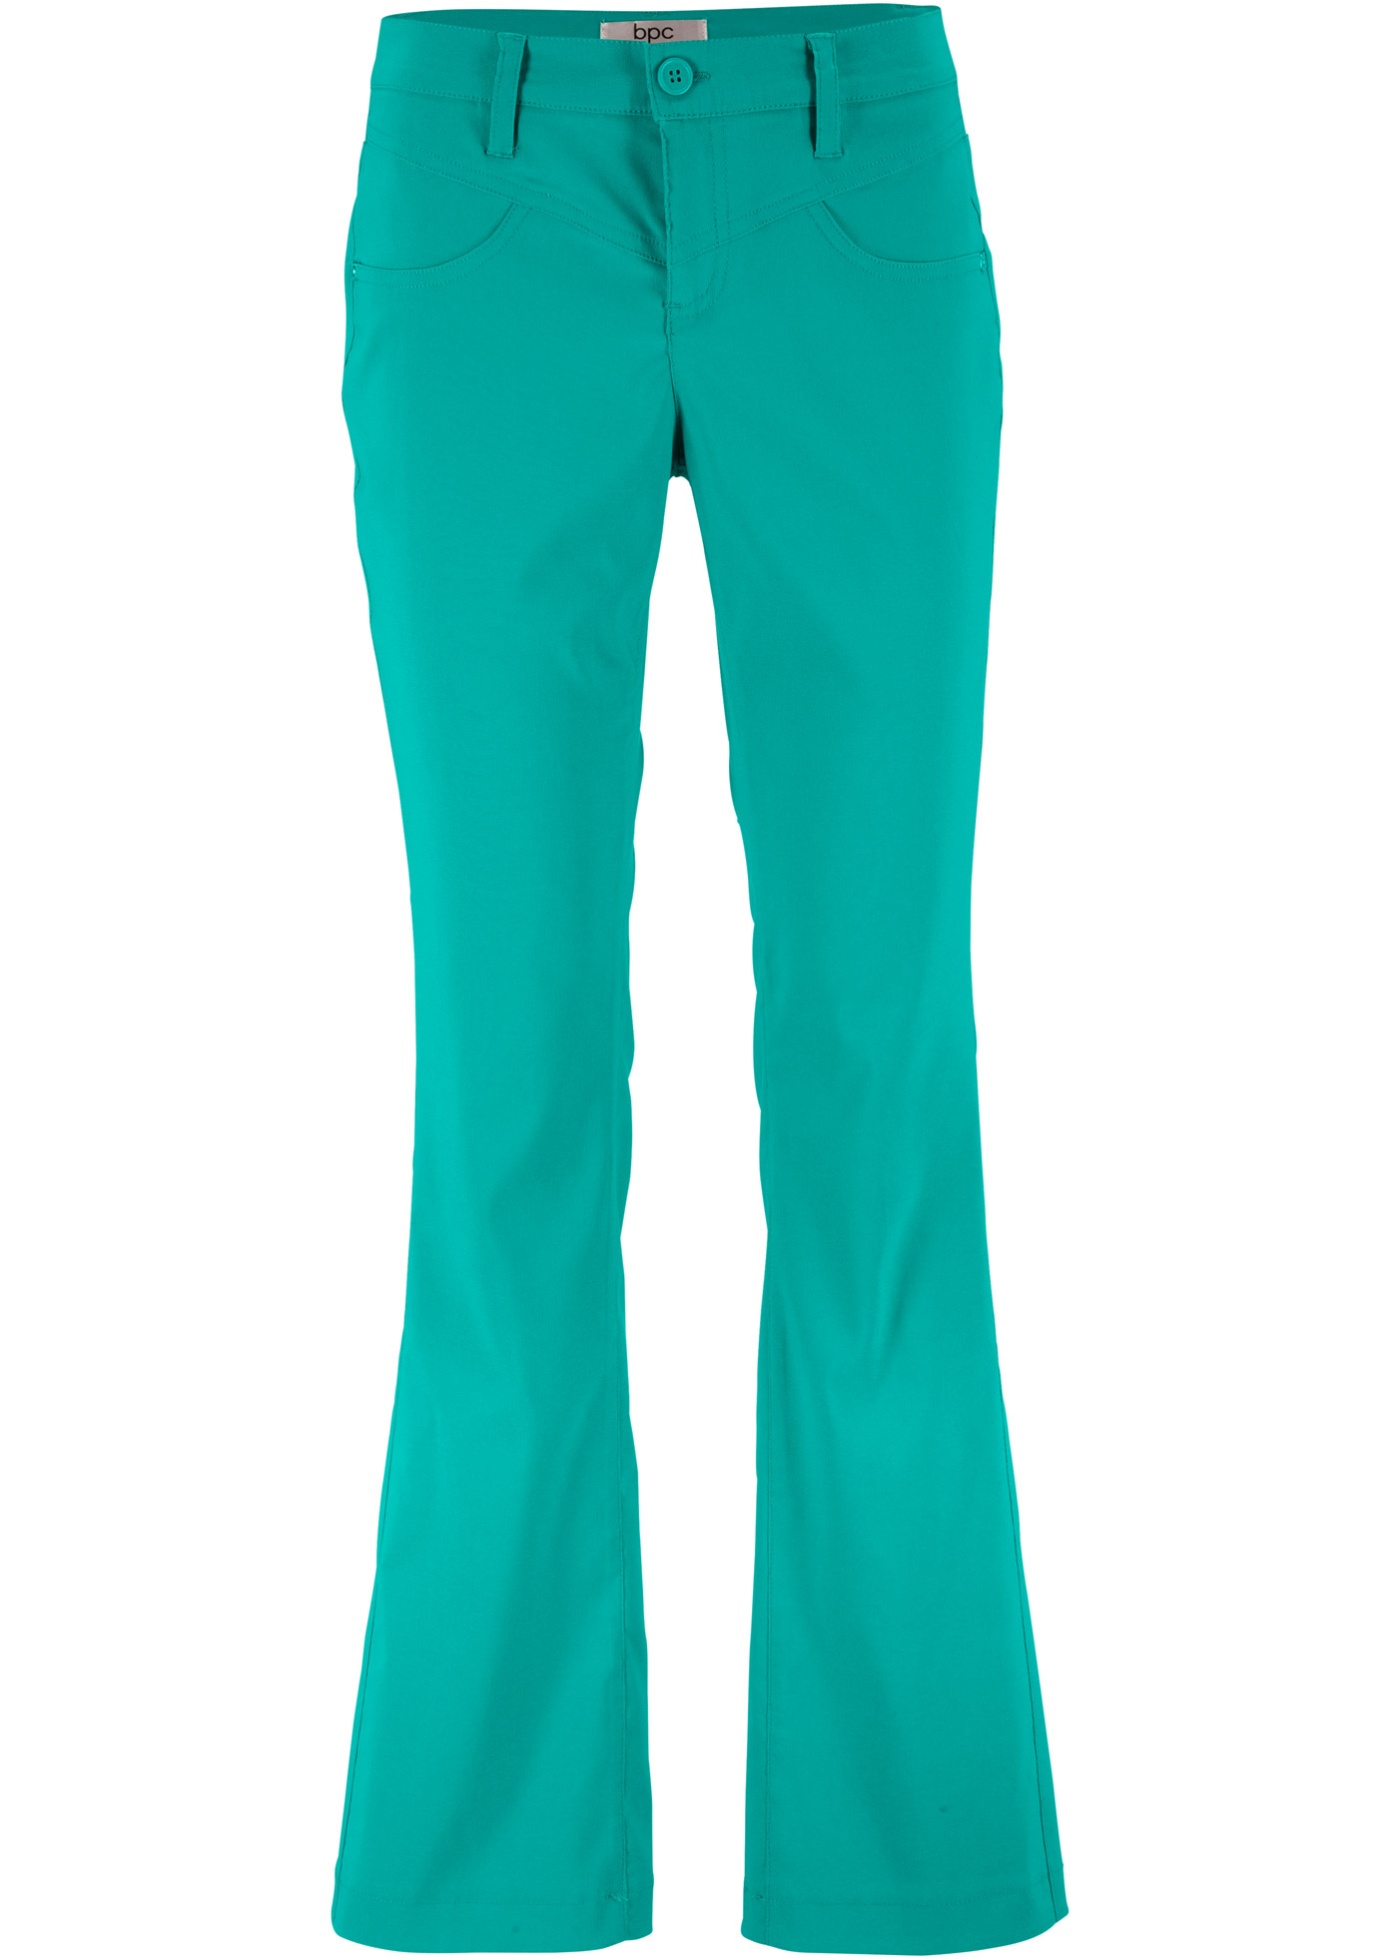 BONPRIX strečové kalhoty Barva: Zelená, Mezinárodní velikost: L, EU velikost: 44